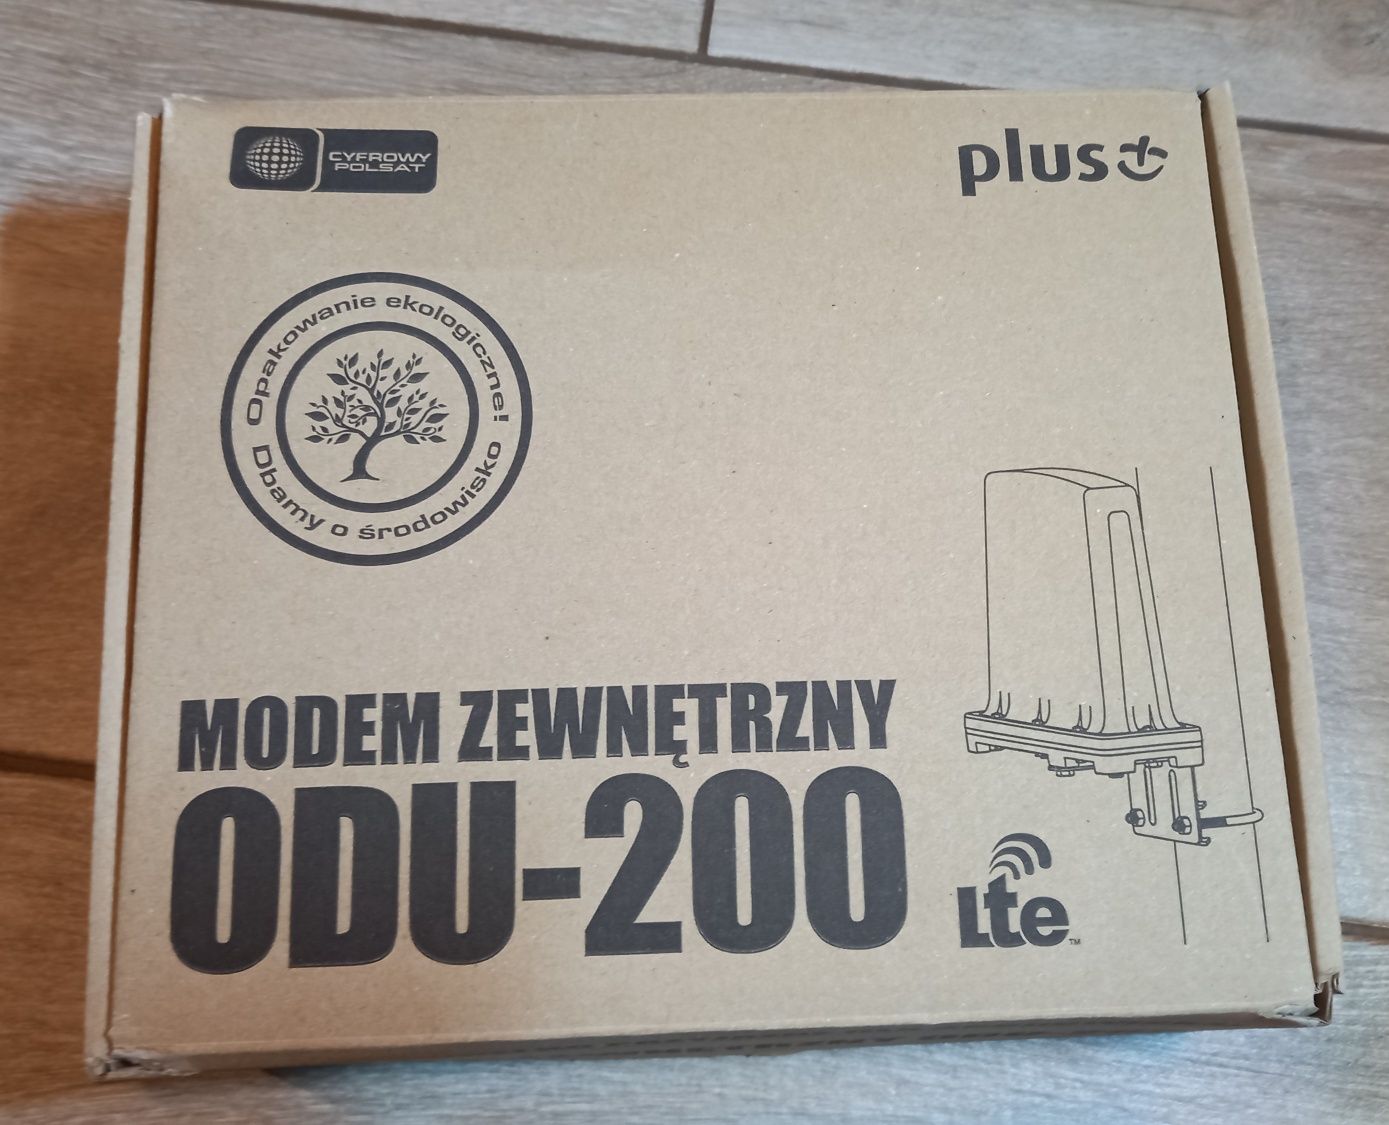 Modem zewnętrzny ODU-200 Plus